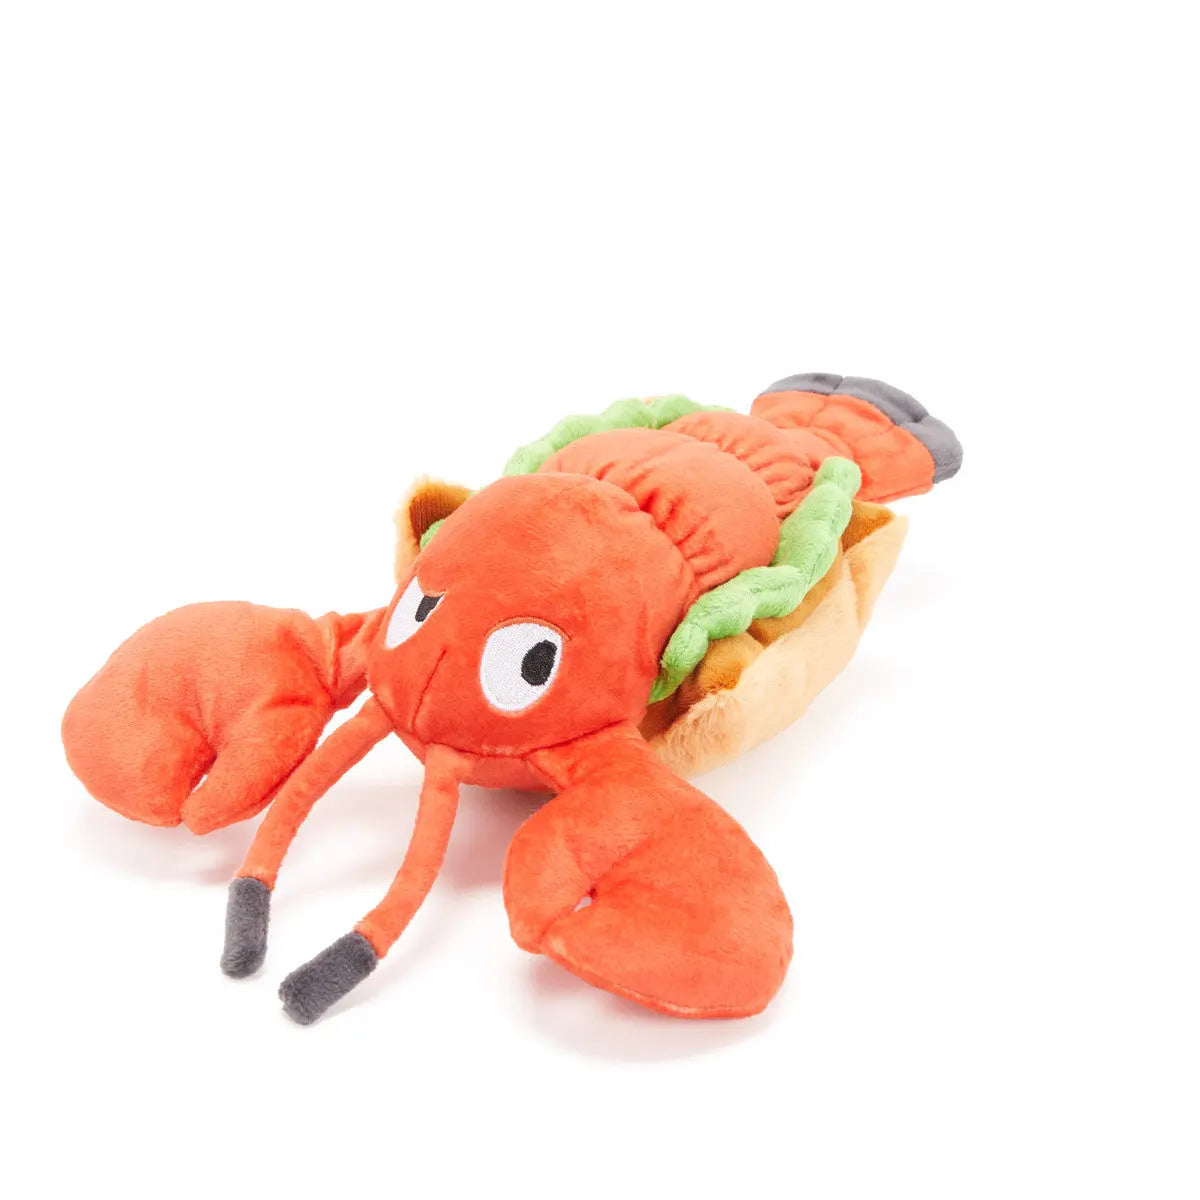 BARK Max's Maine Lobster Roll Dog Toys BARK